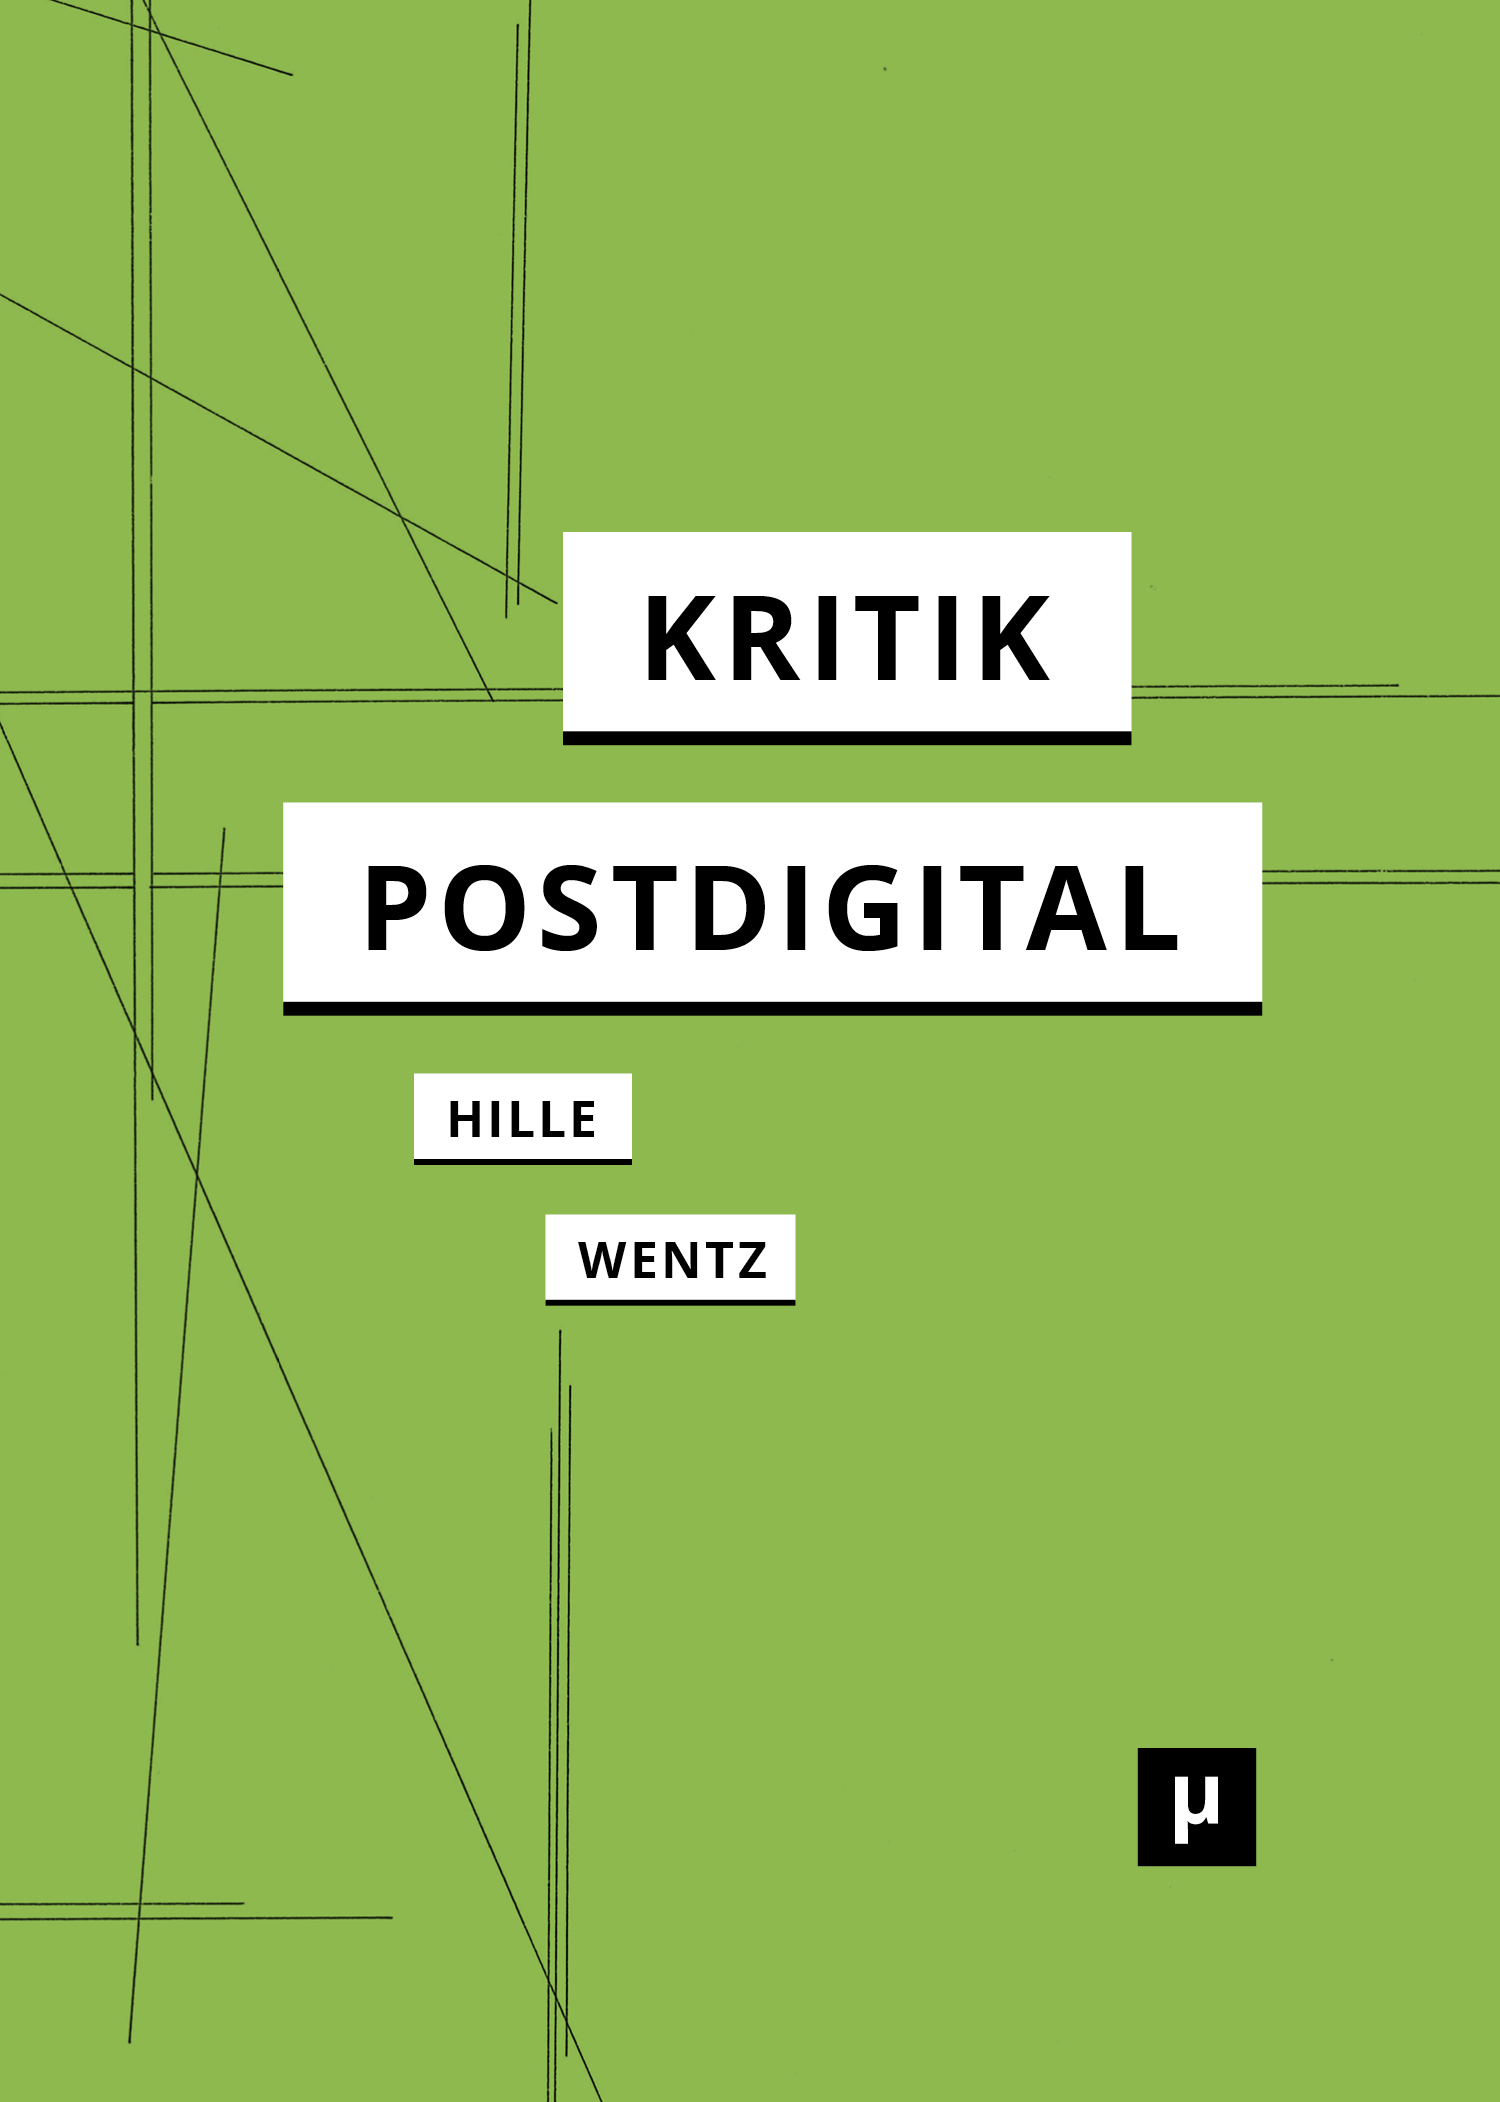 Kritik postdigital (meson press eG, 2023)